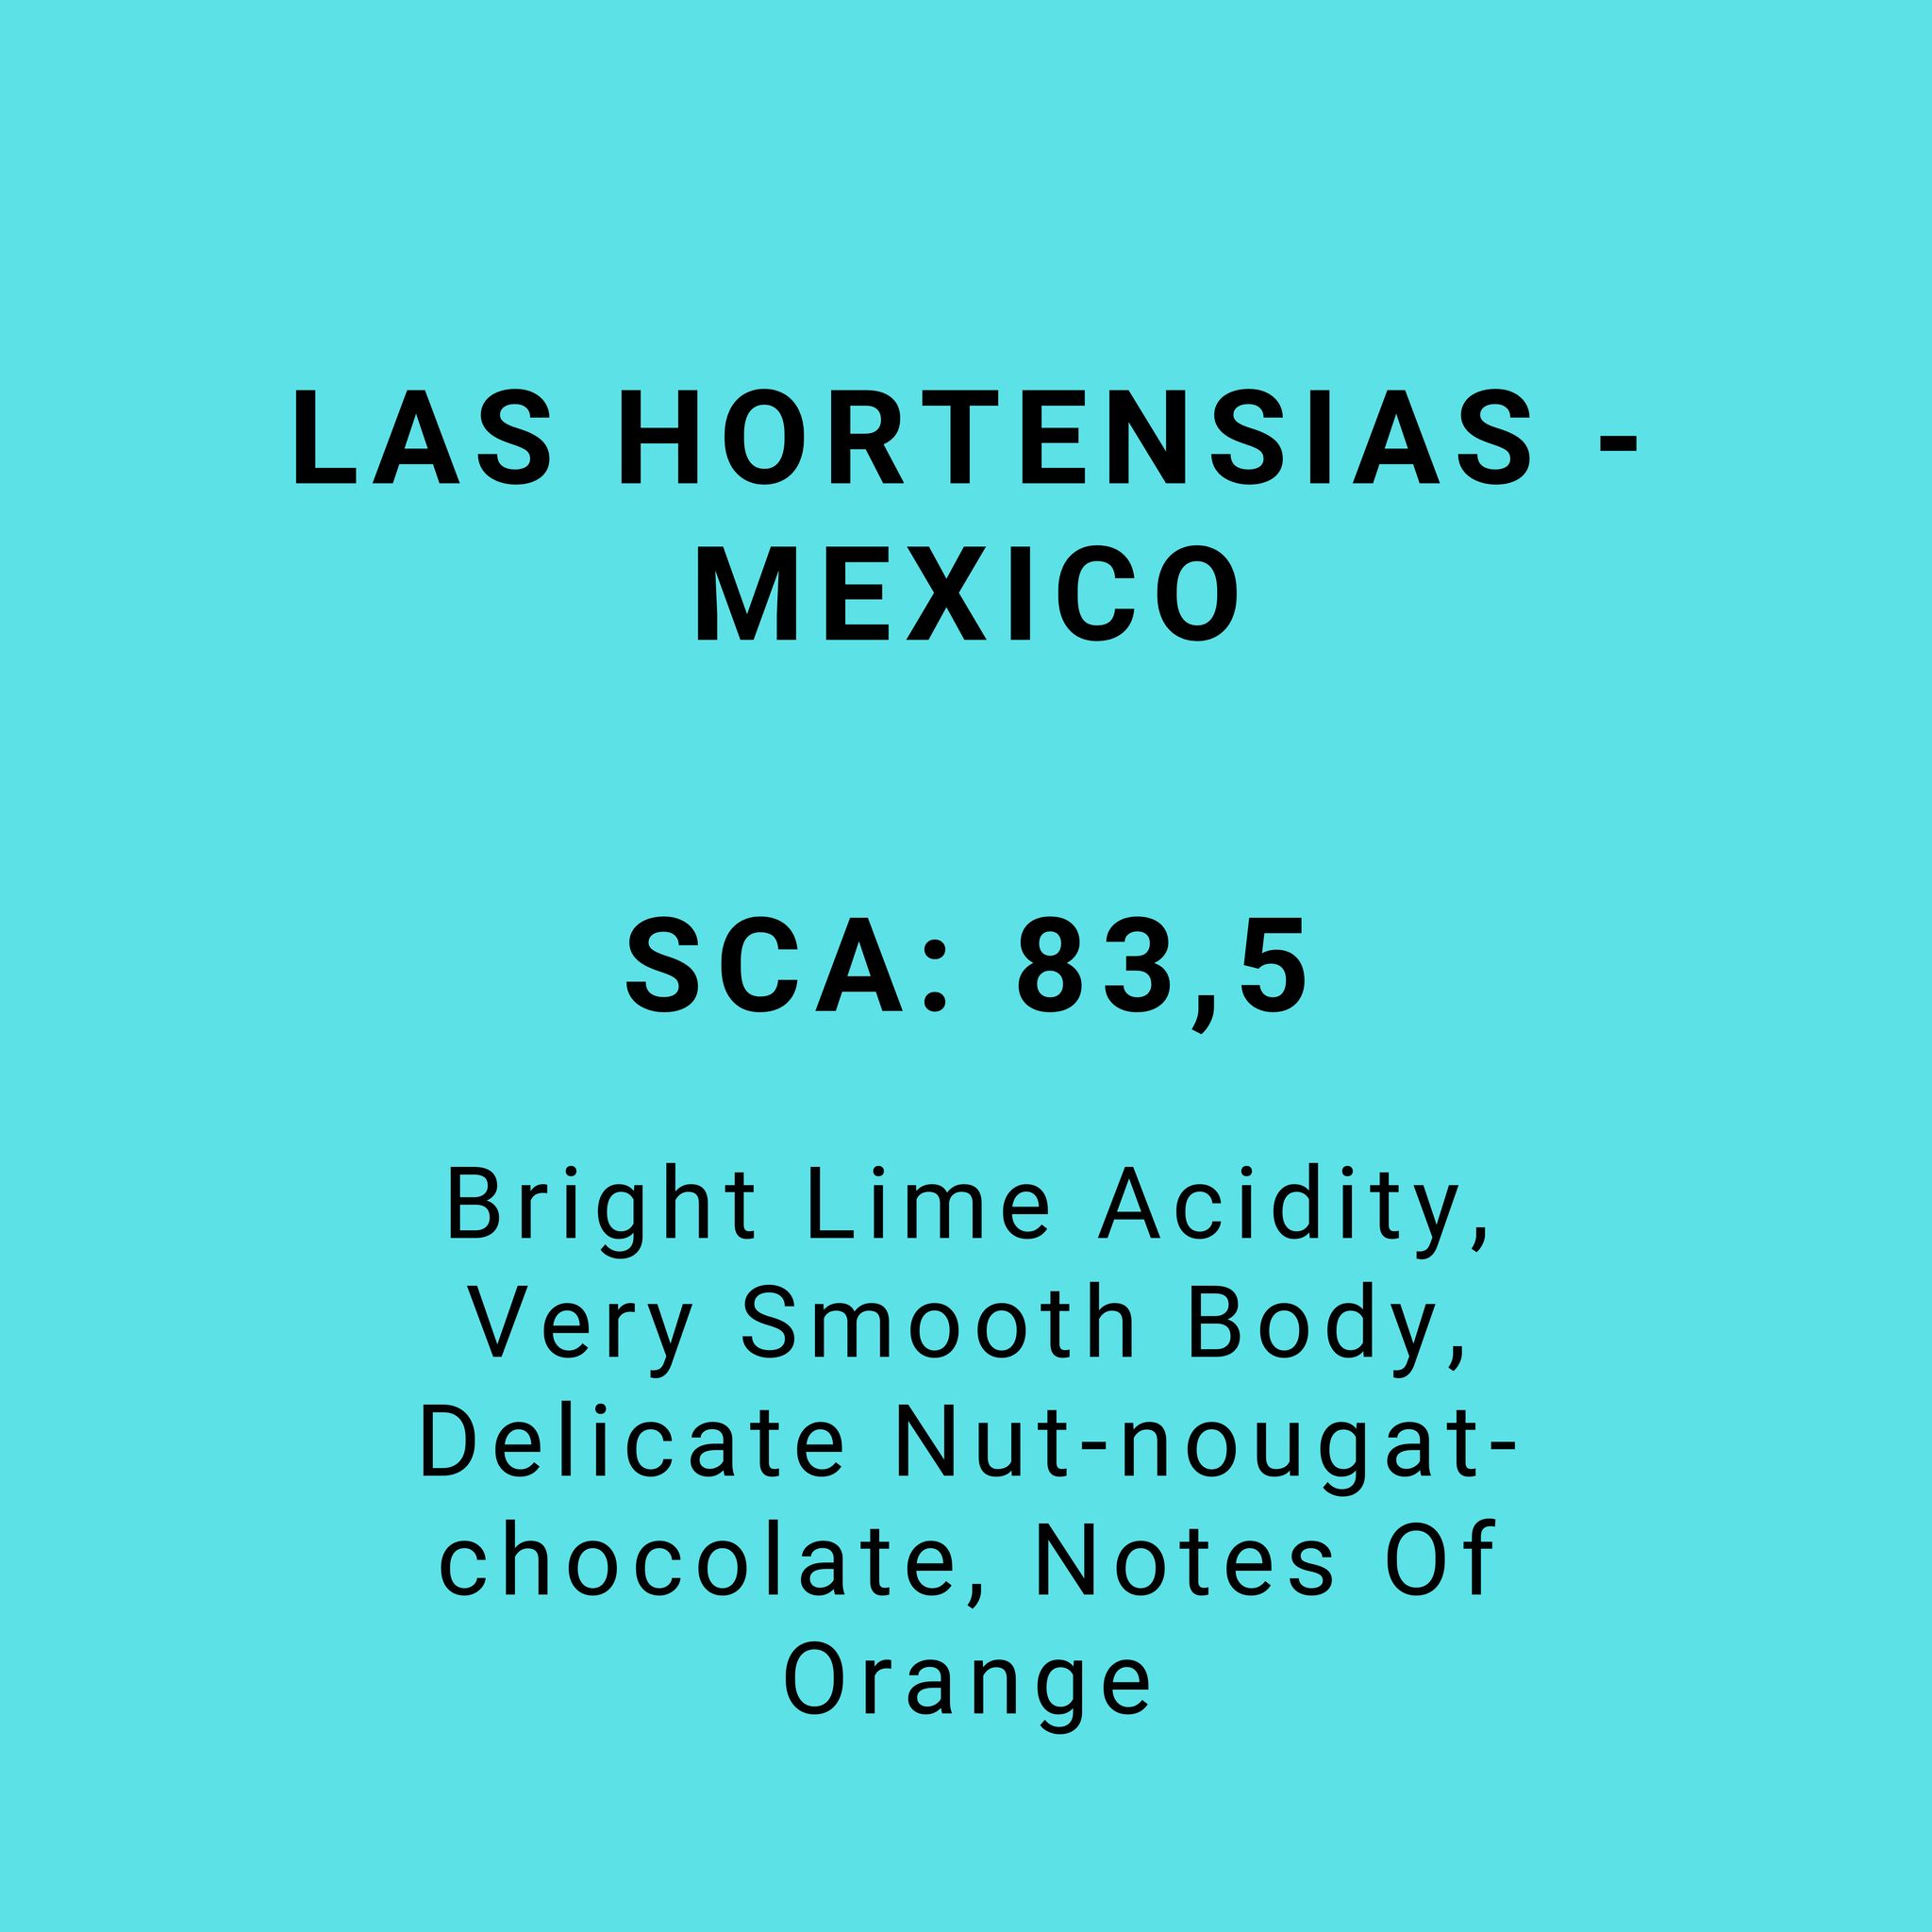 LAS HORTENSIAS - MEXICO